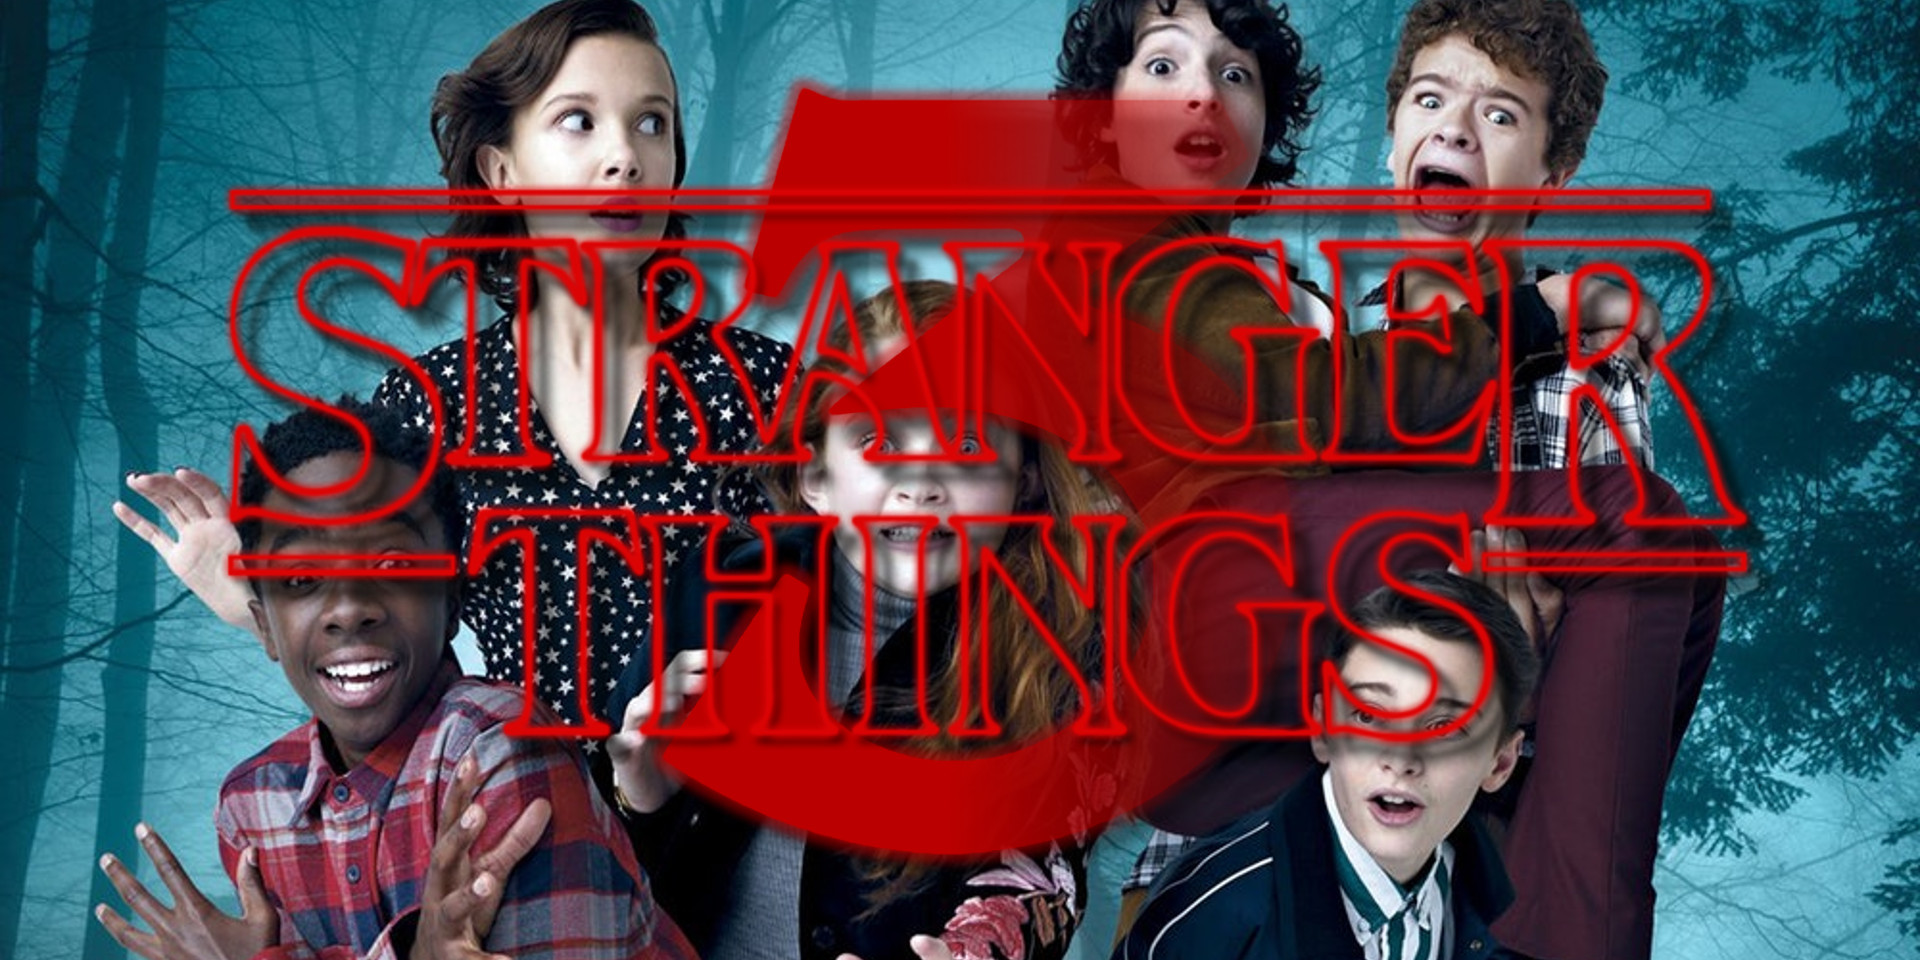 Stranger Things Season 3, Trailer 